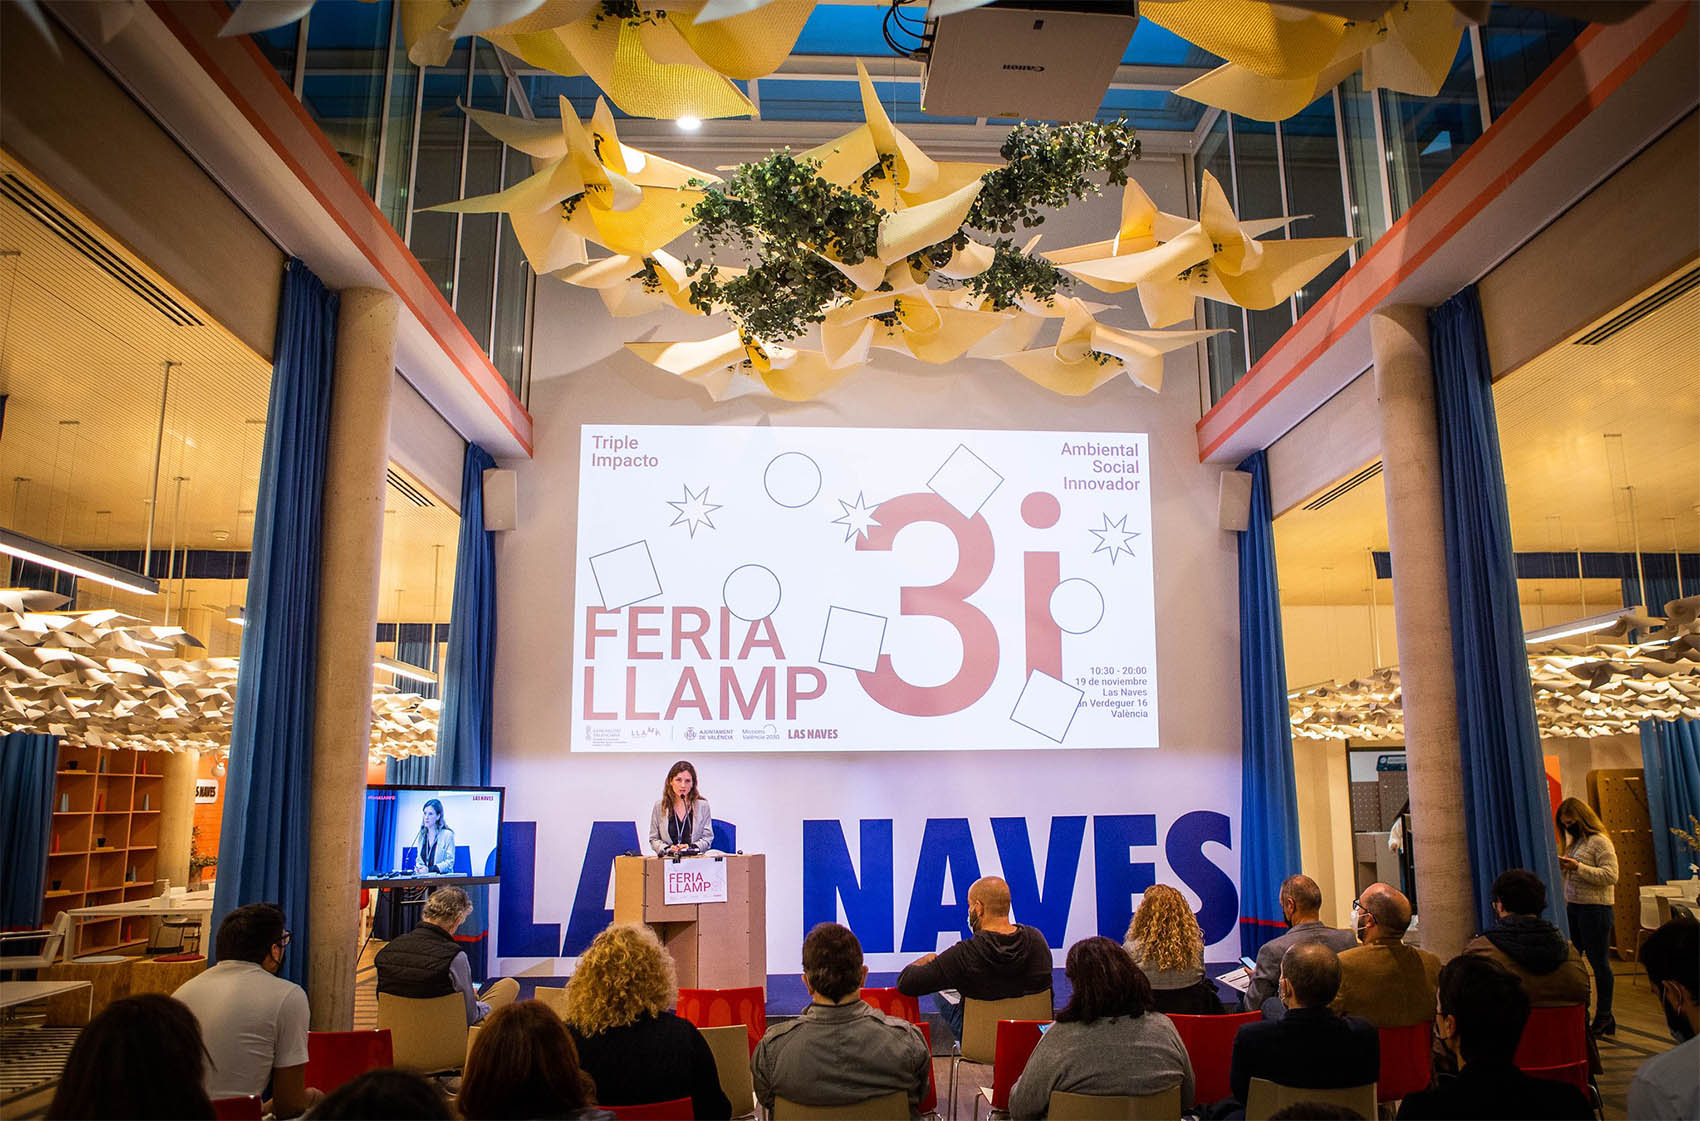 Proyecto de indentidad para la Feria LLAMP3i de Las Naves